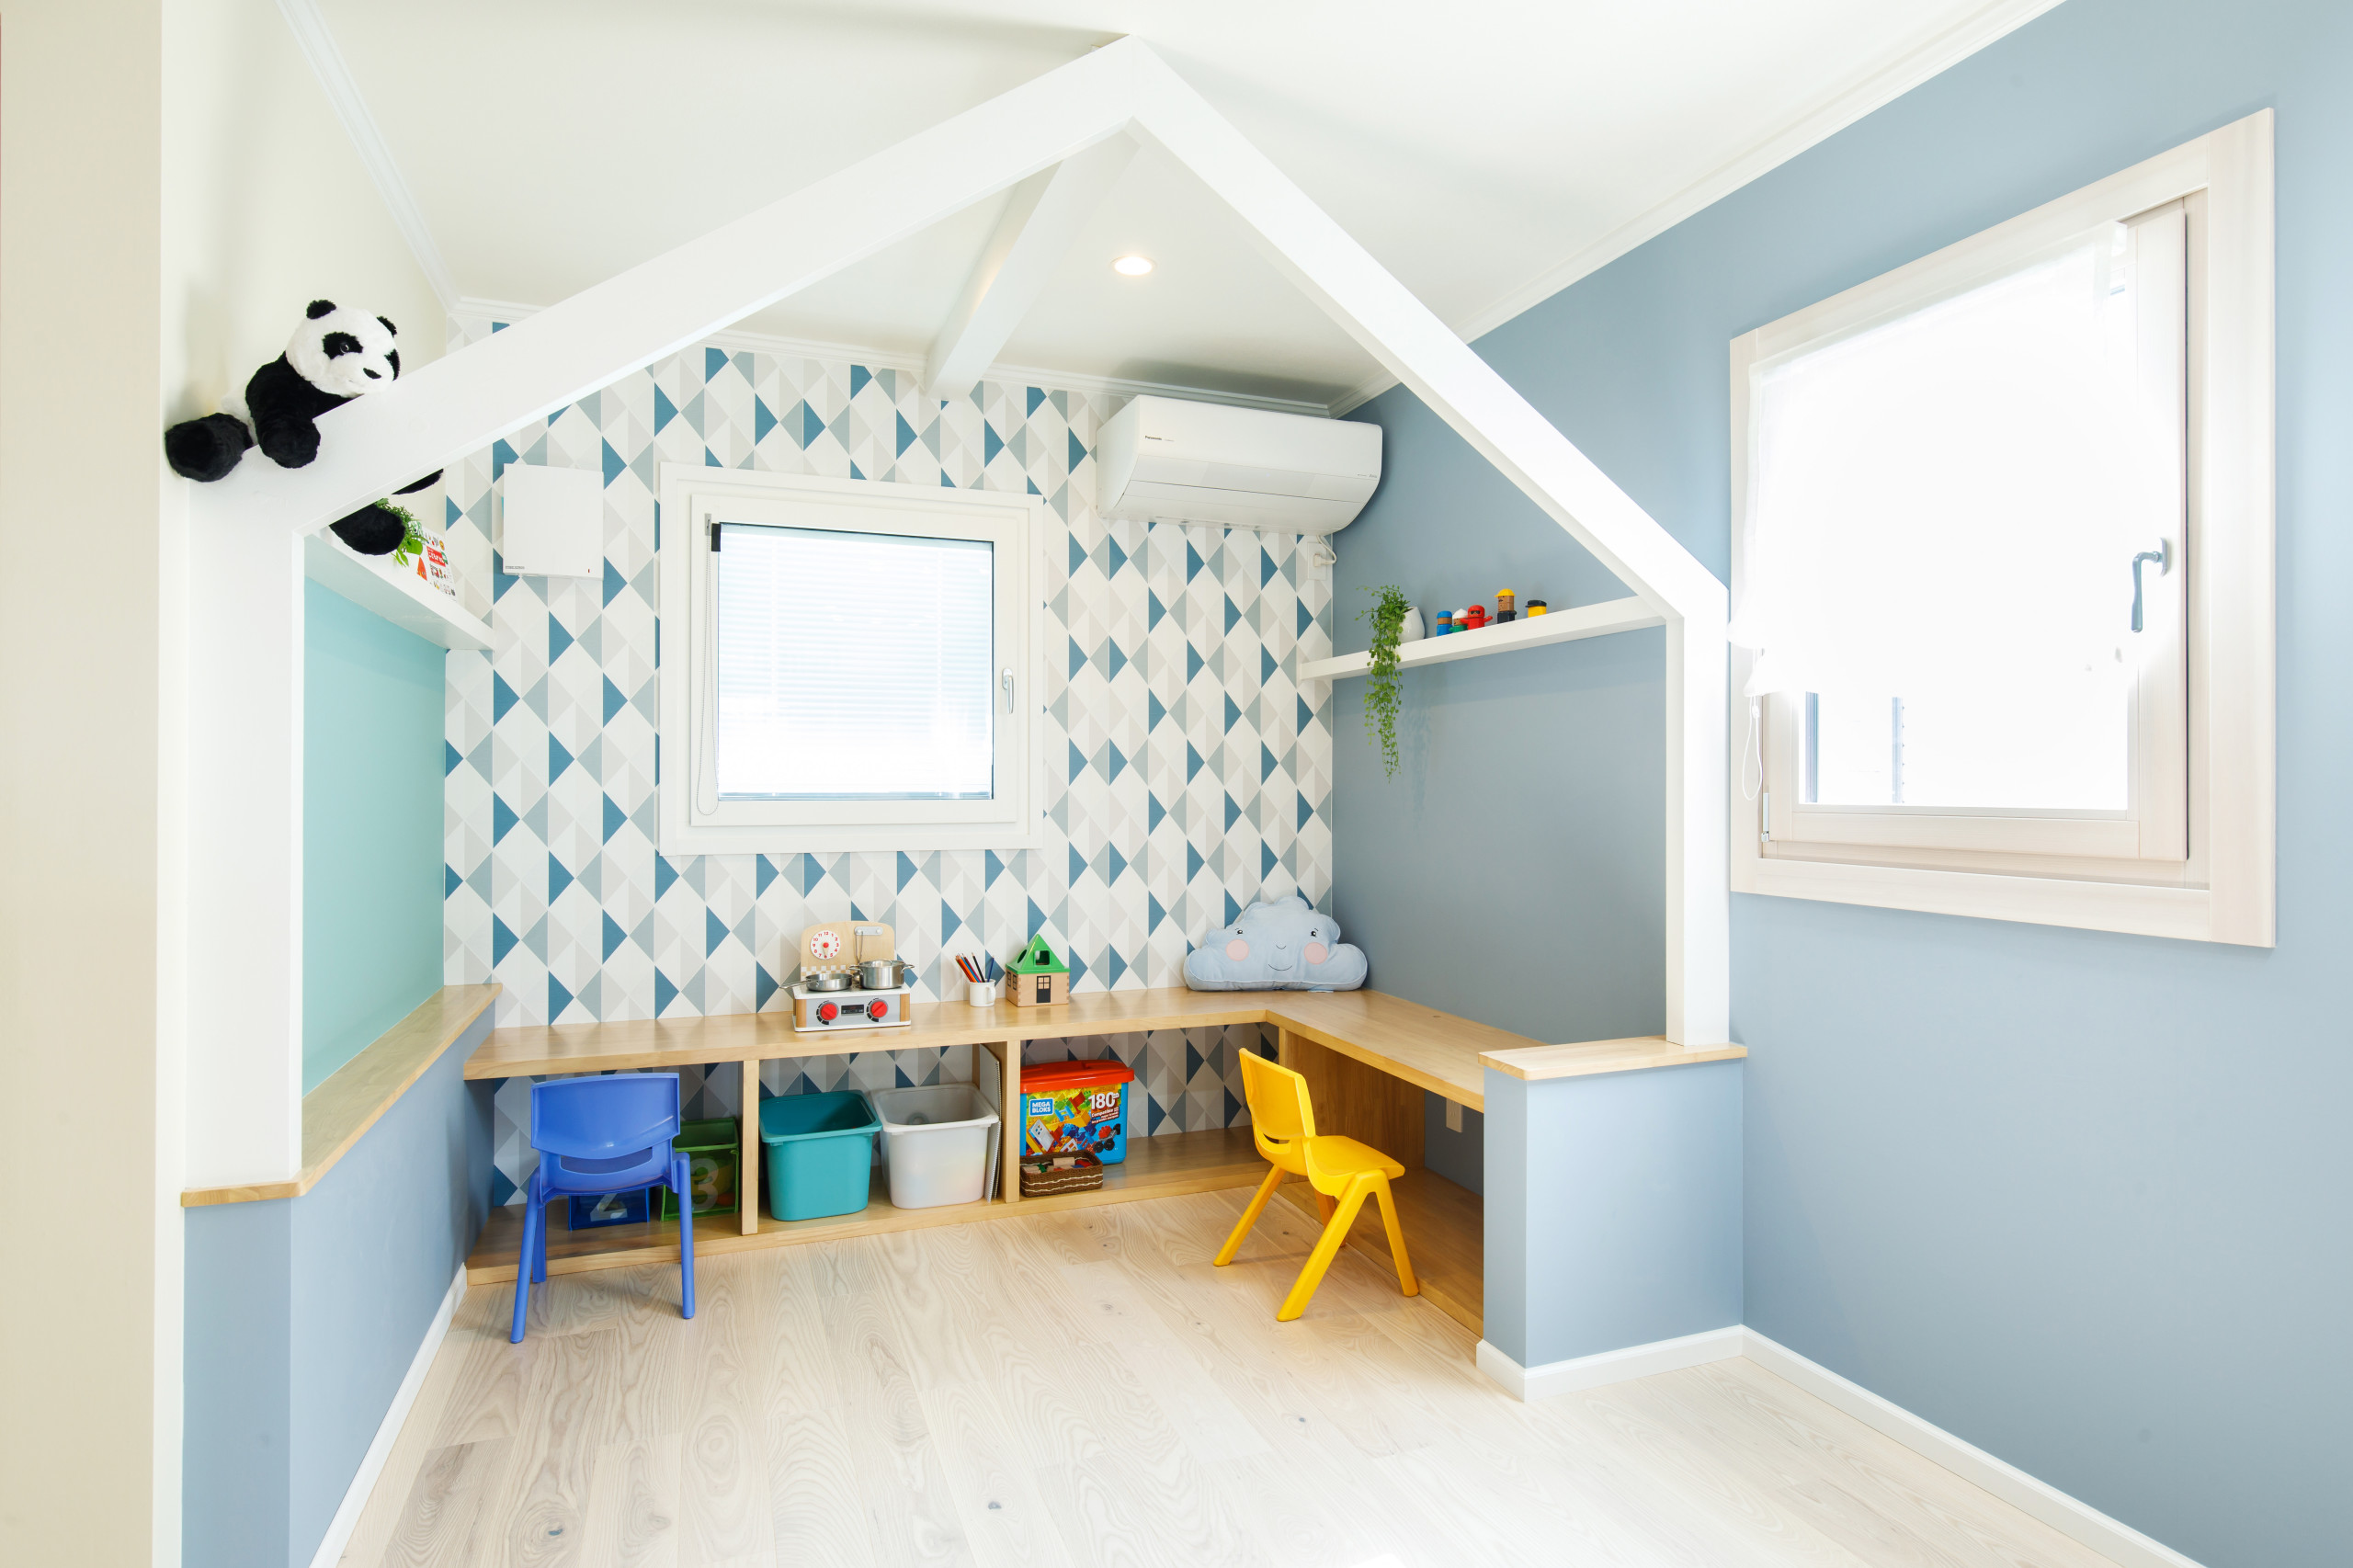 北欧スタイルのおしゃれな子供部屋のインテリア画像 21年10月 Houzz ハウズ